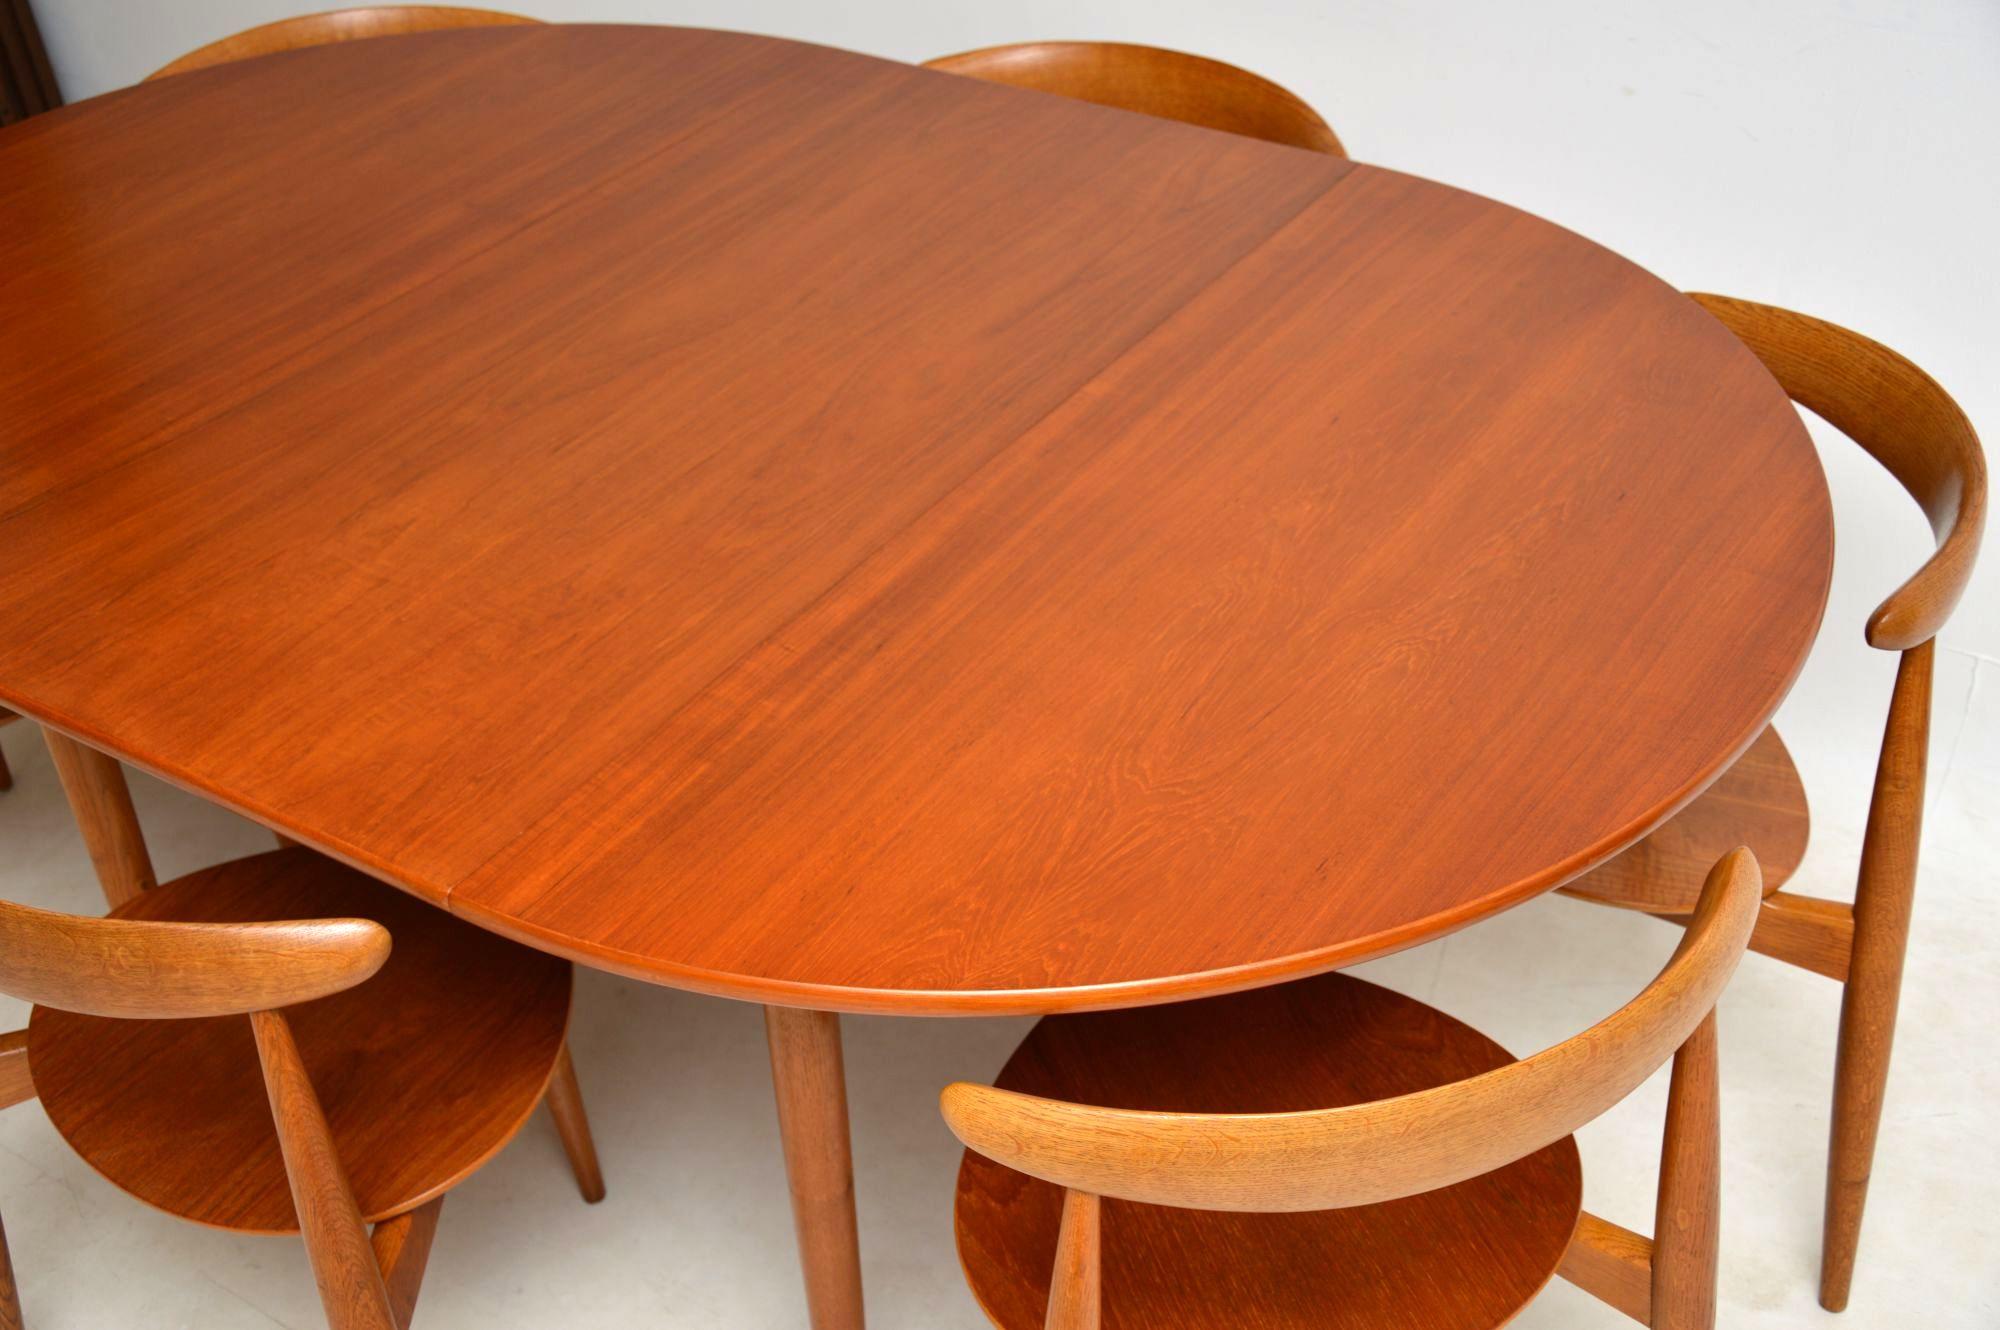 1950s Danish Teak & Oak Dining Table & Chairs by Hans Wegner for Fritz Hansen 6